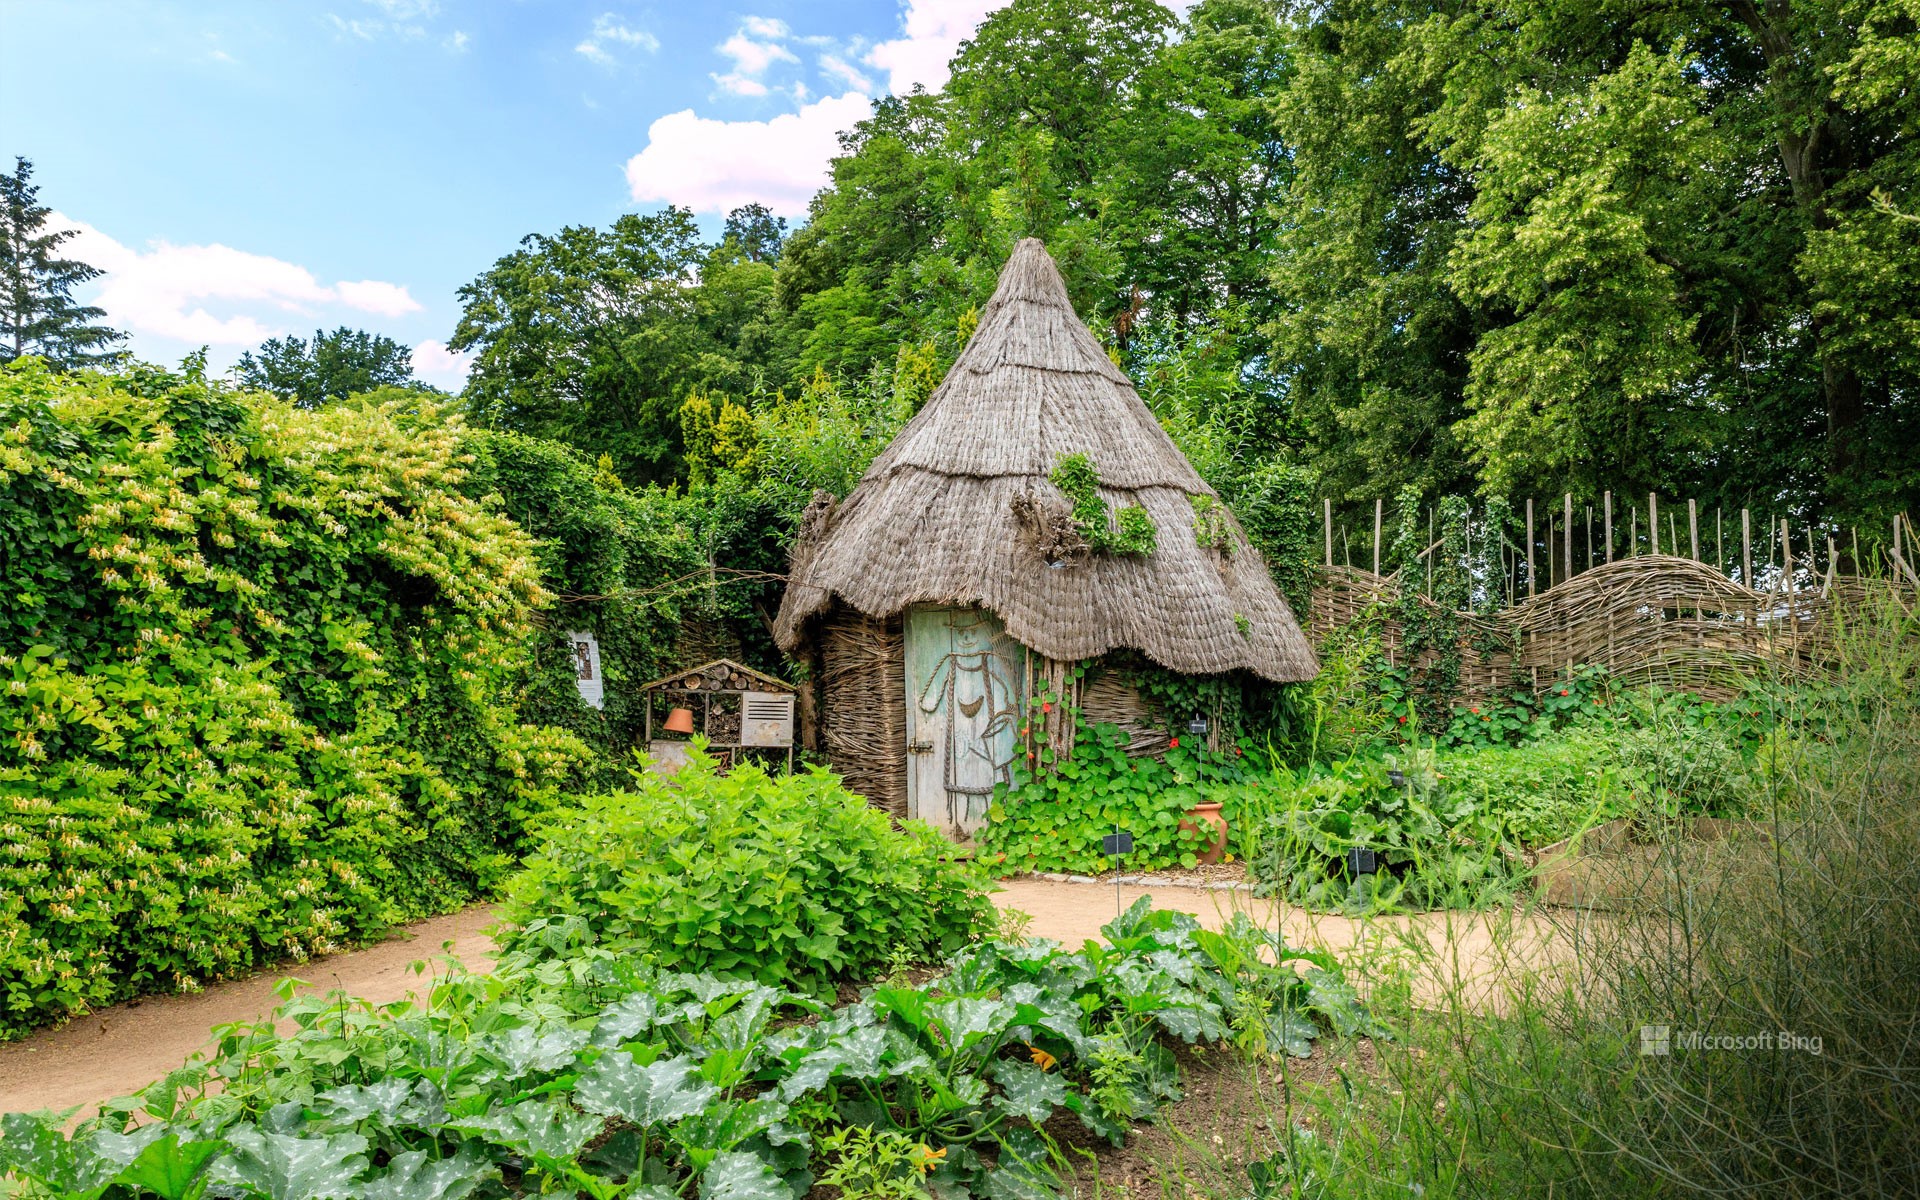 Wicker hut in the vegetable garden of the Parc floral de la Source, Orléans